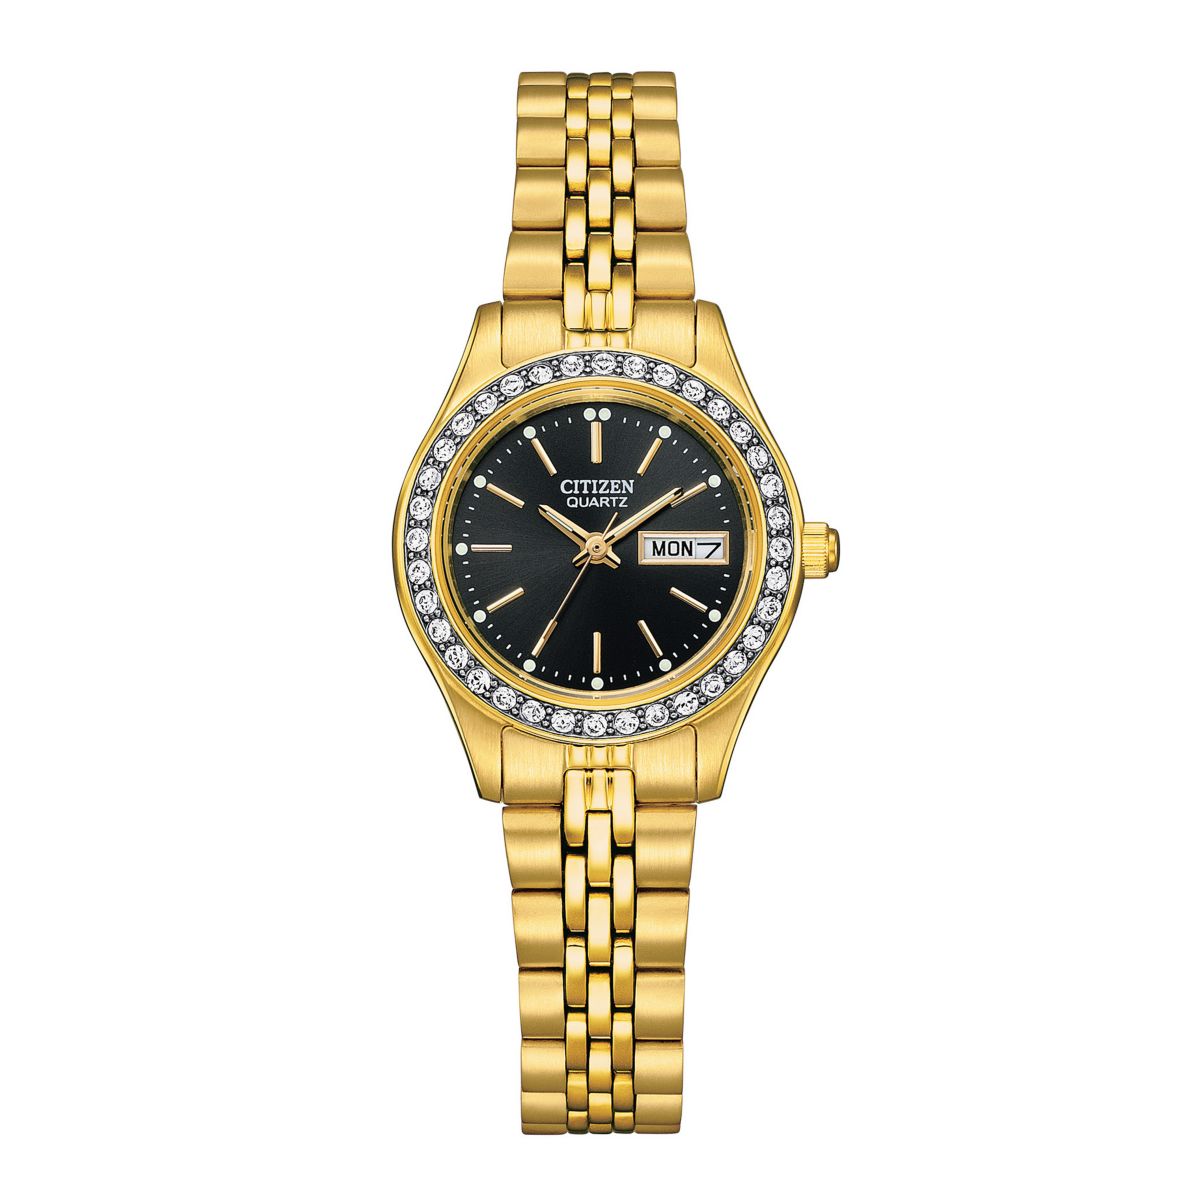 Женские часы Citizen из нержавеющей стали с кристаллами и золотистым акцентом - EQ0532-55E Citizen